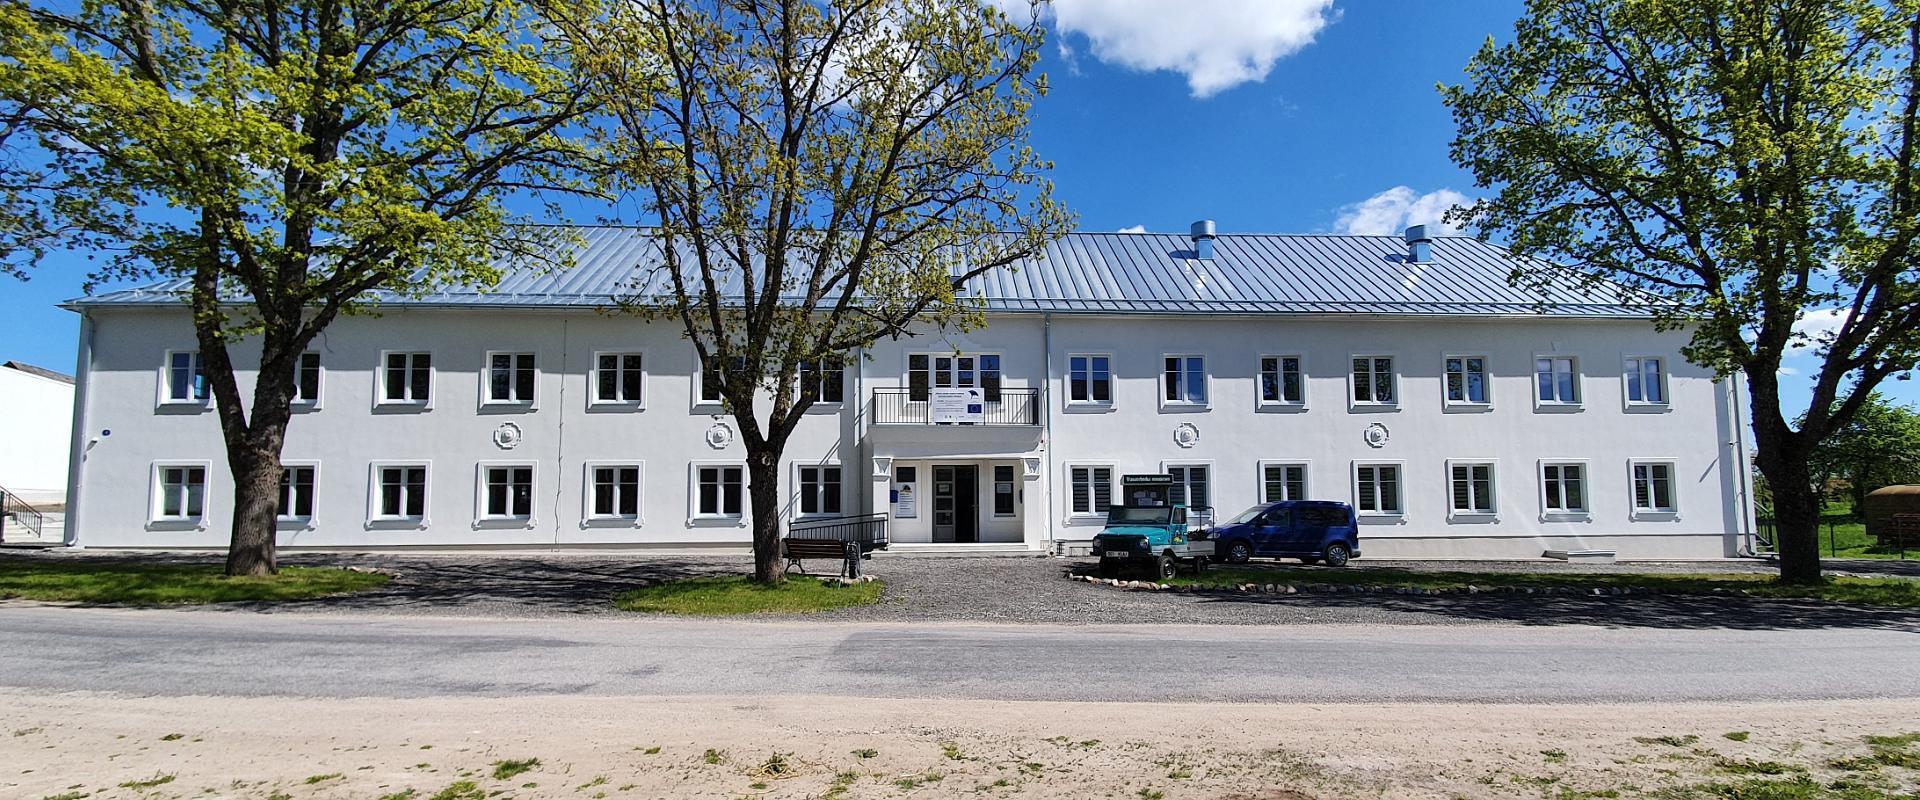 Järva - Jaani vanatehnika muuseumide keskus